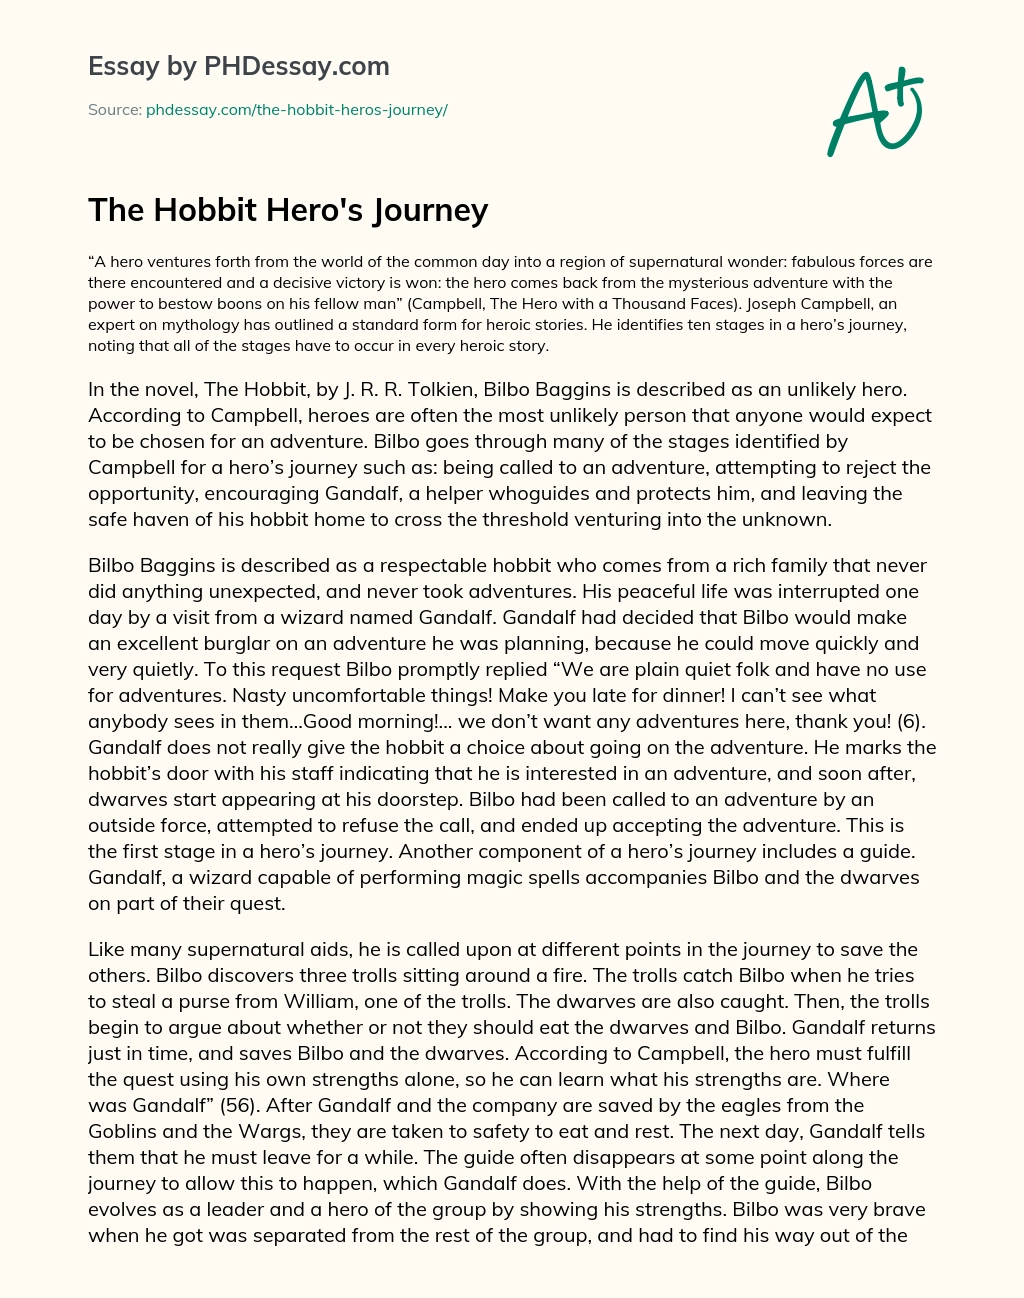 The Hobbit Hero’s Journey essay